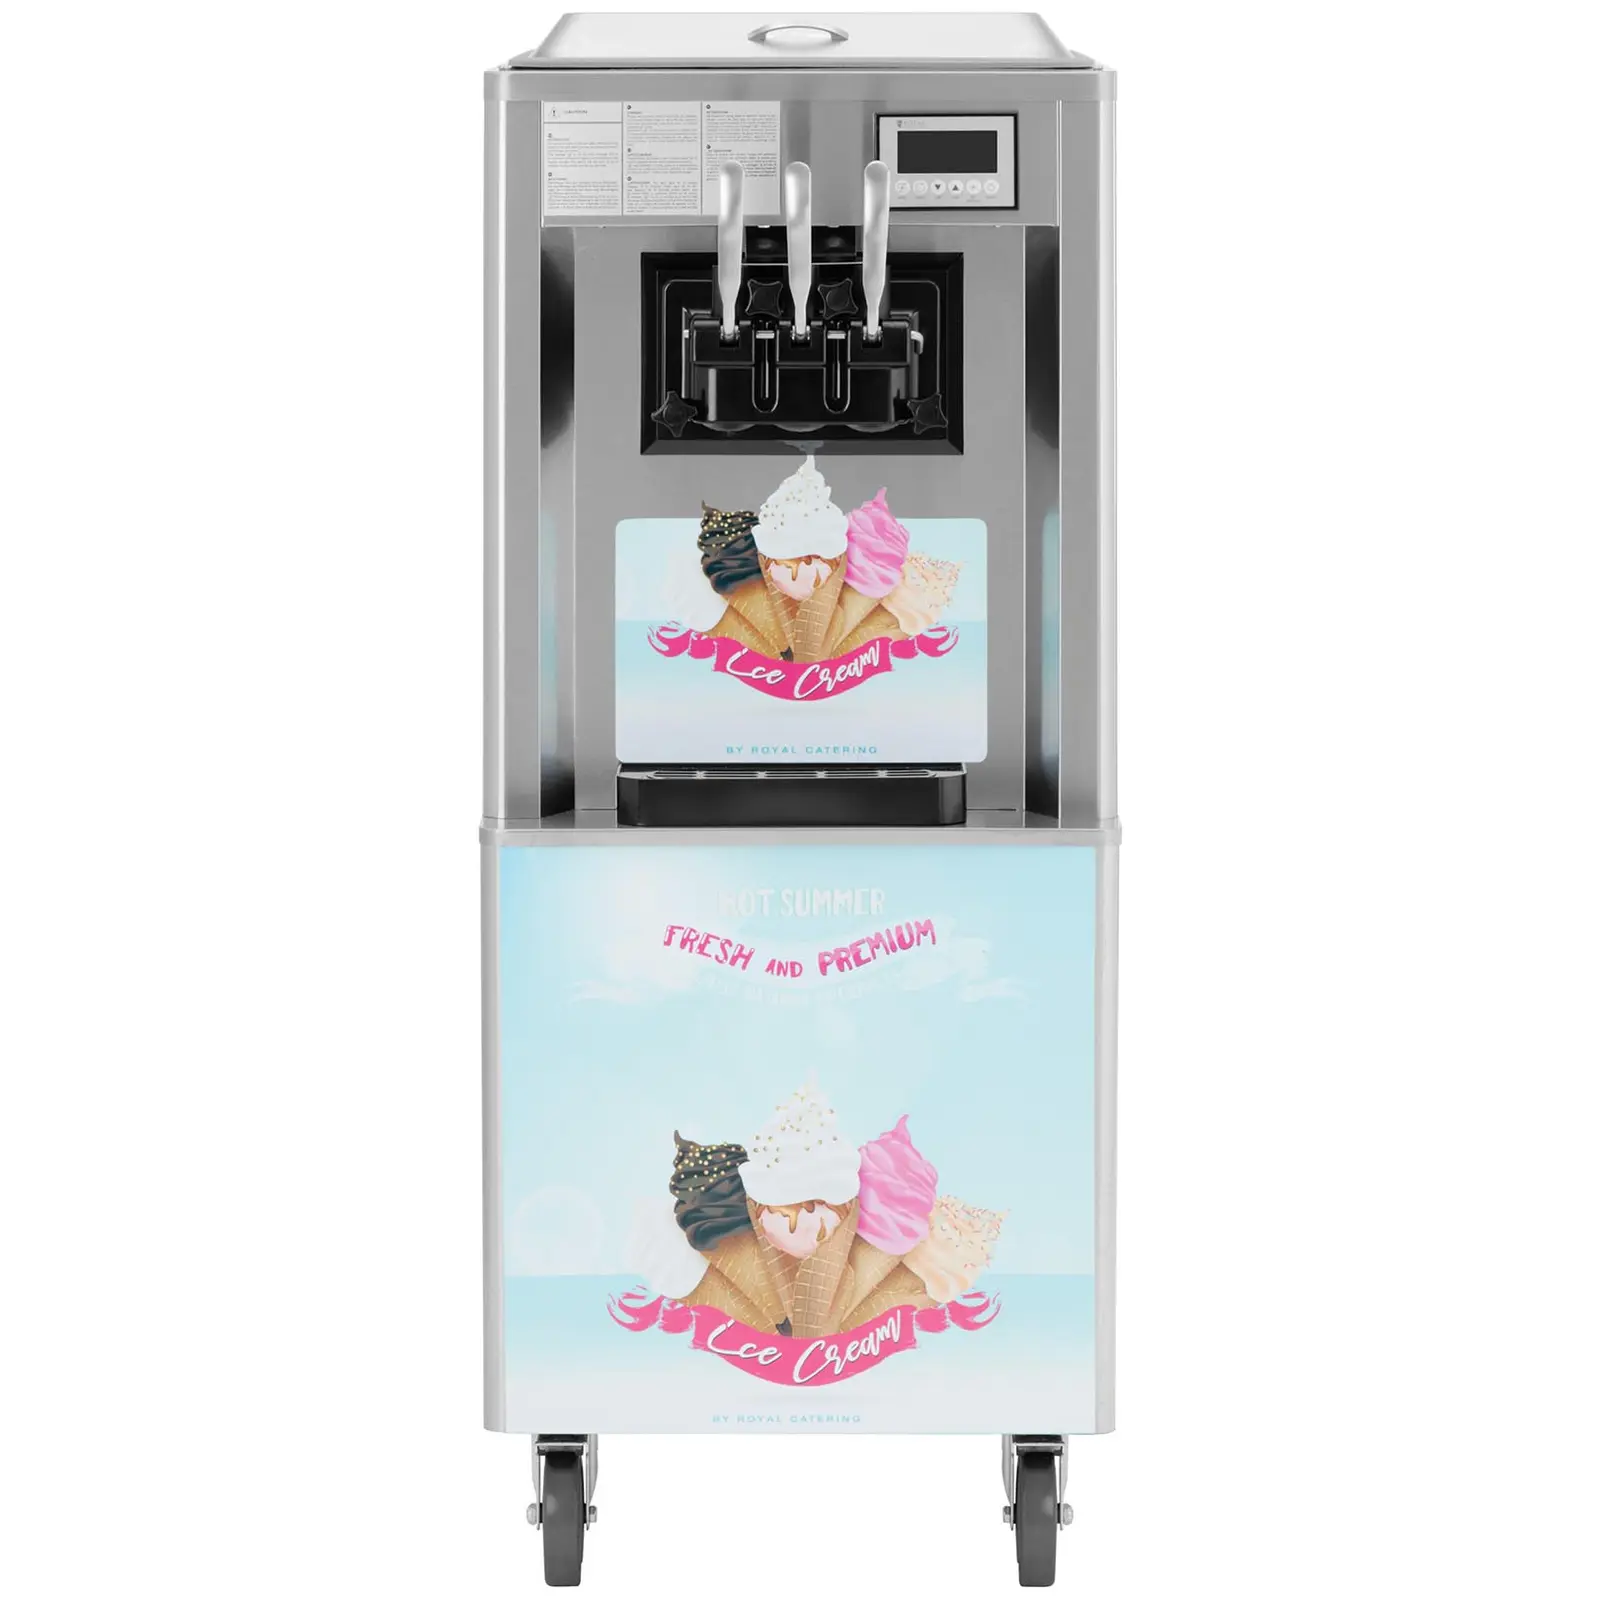 Stroj na točenú zmrzlinu - 2140 W - 33 l/h - 3 príchute